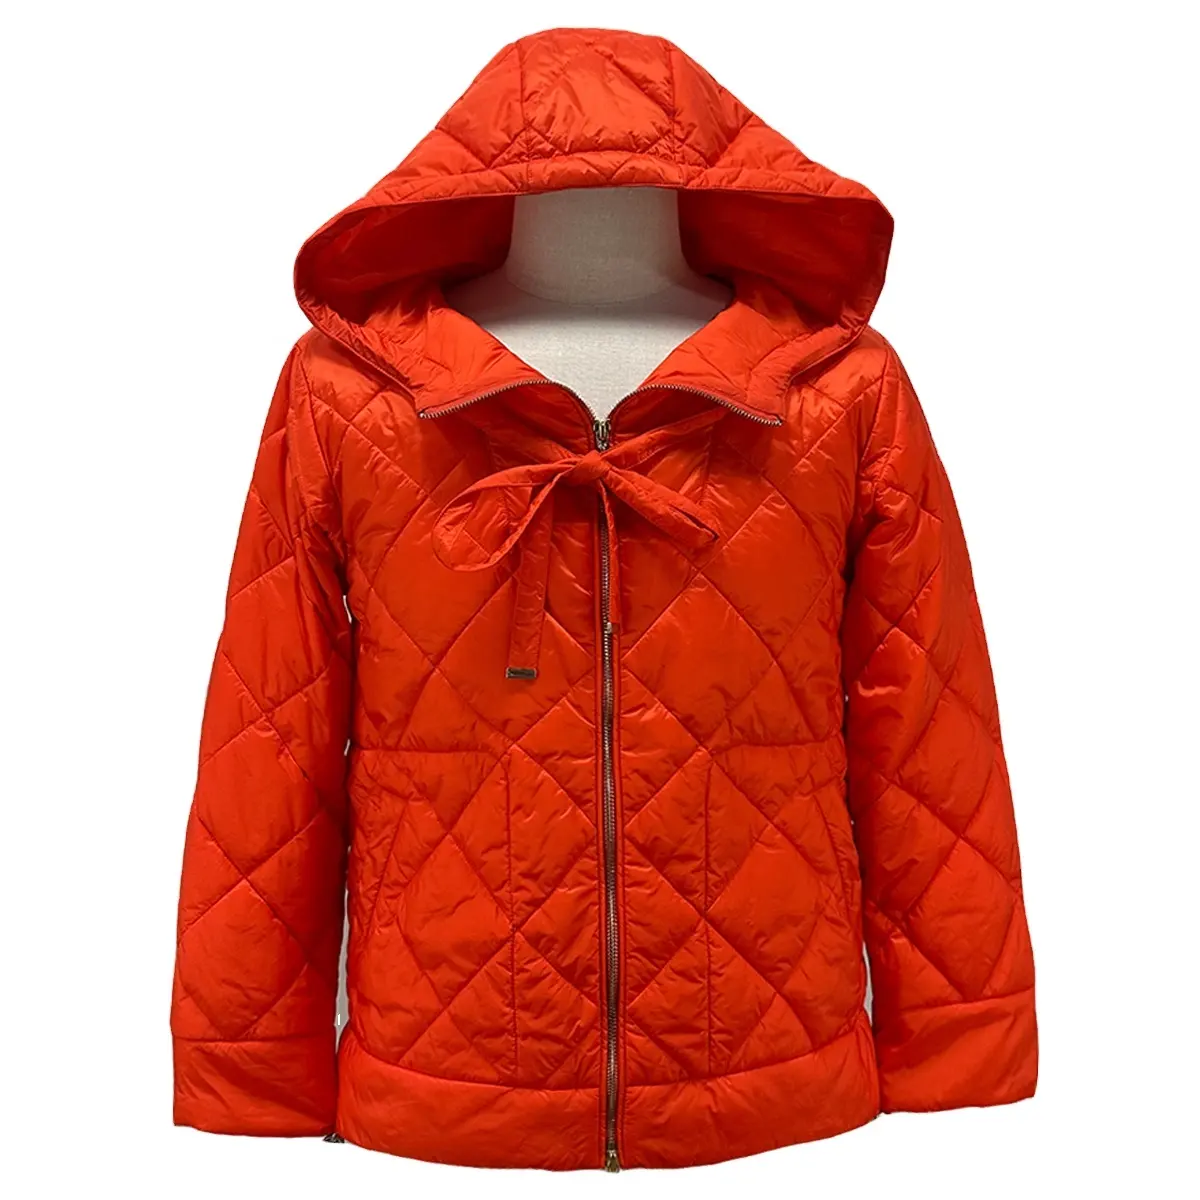 फैक्टरी सस्ते नारंगी लाल महिला puffer कोट कपास गद्देदार महिलाओं की जैकेट नायलॉन drawstring के साथ रजाई बना हुआ महिलाओं सर्दियों बॉम्बर कोट